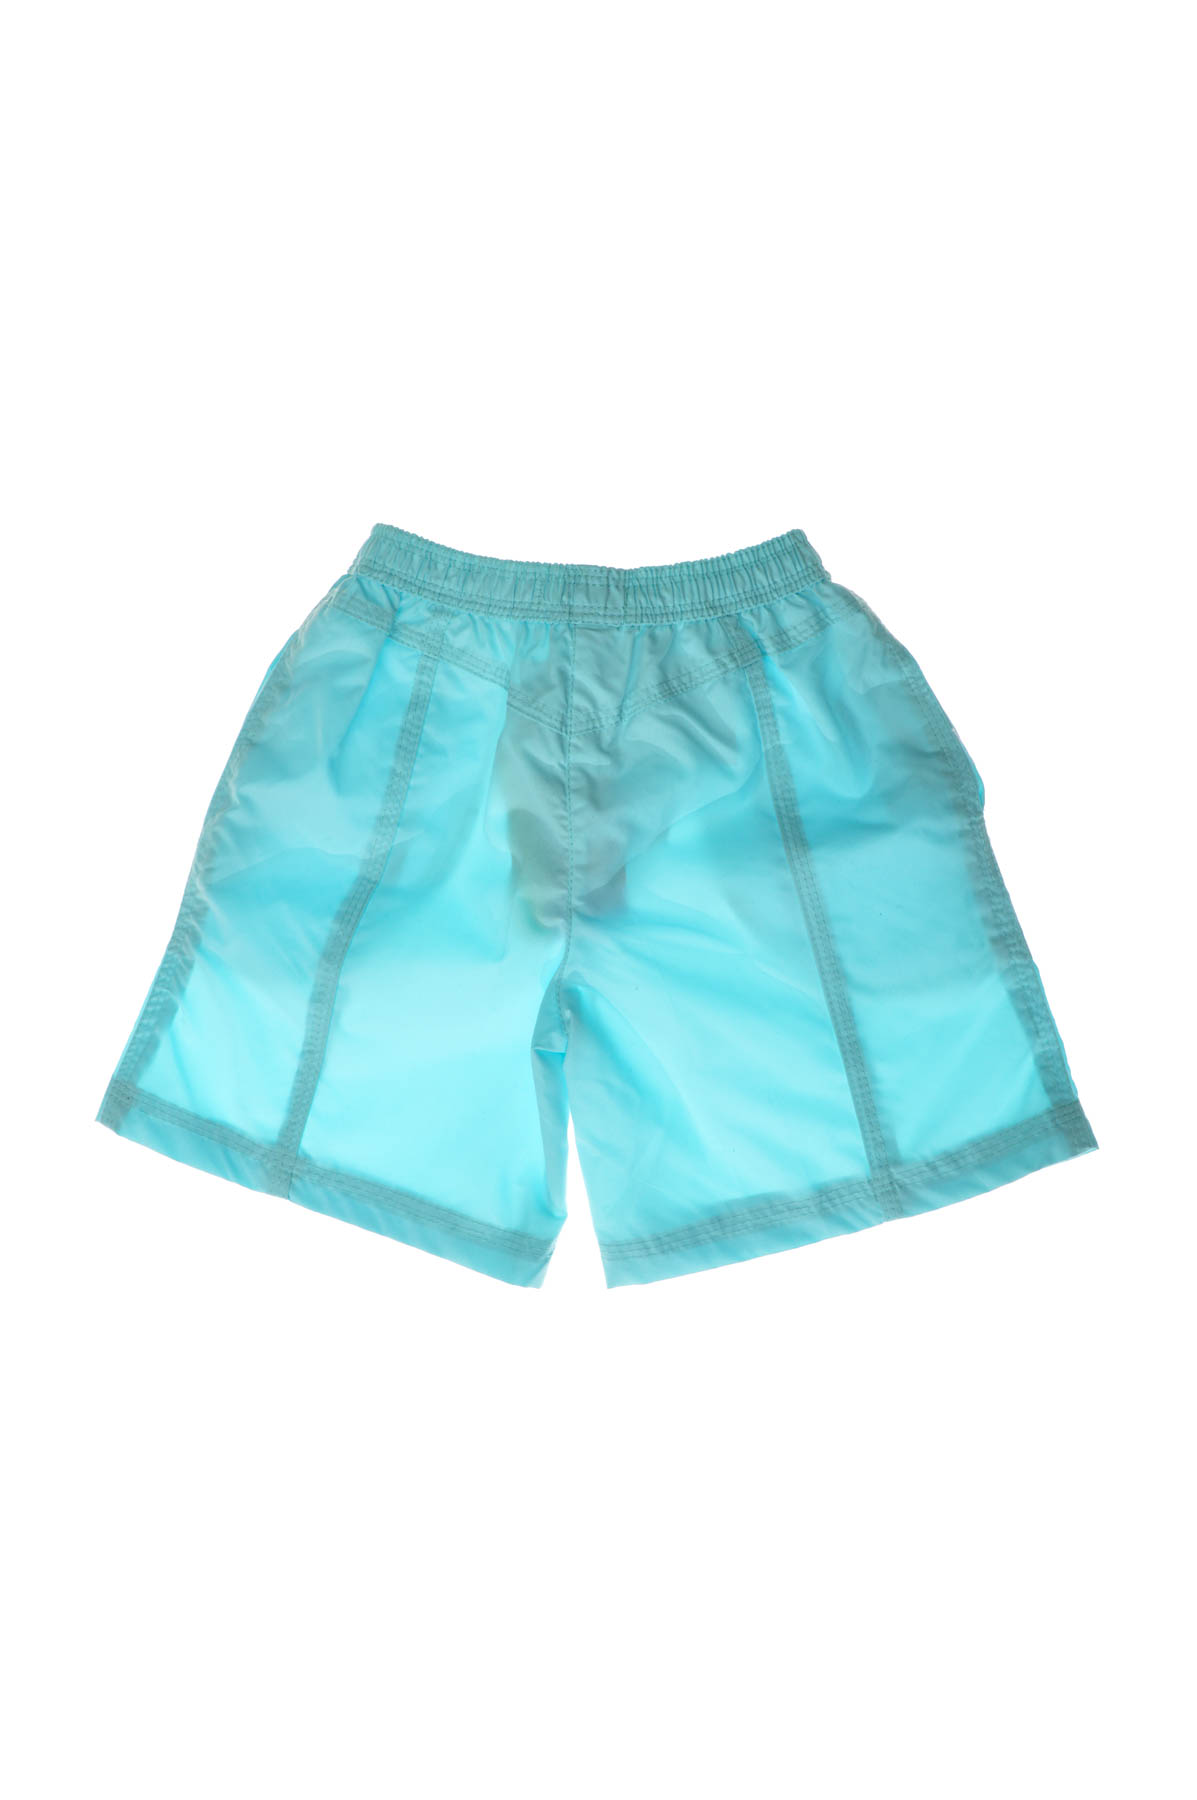 Shorts for girls - HAVОC - 1